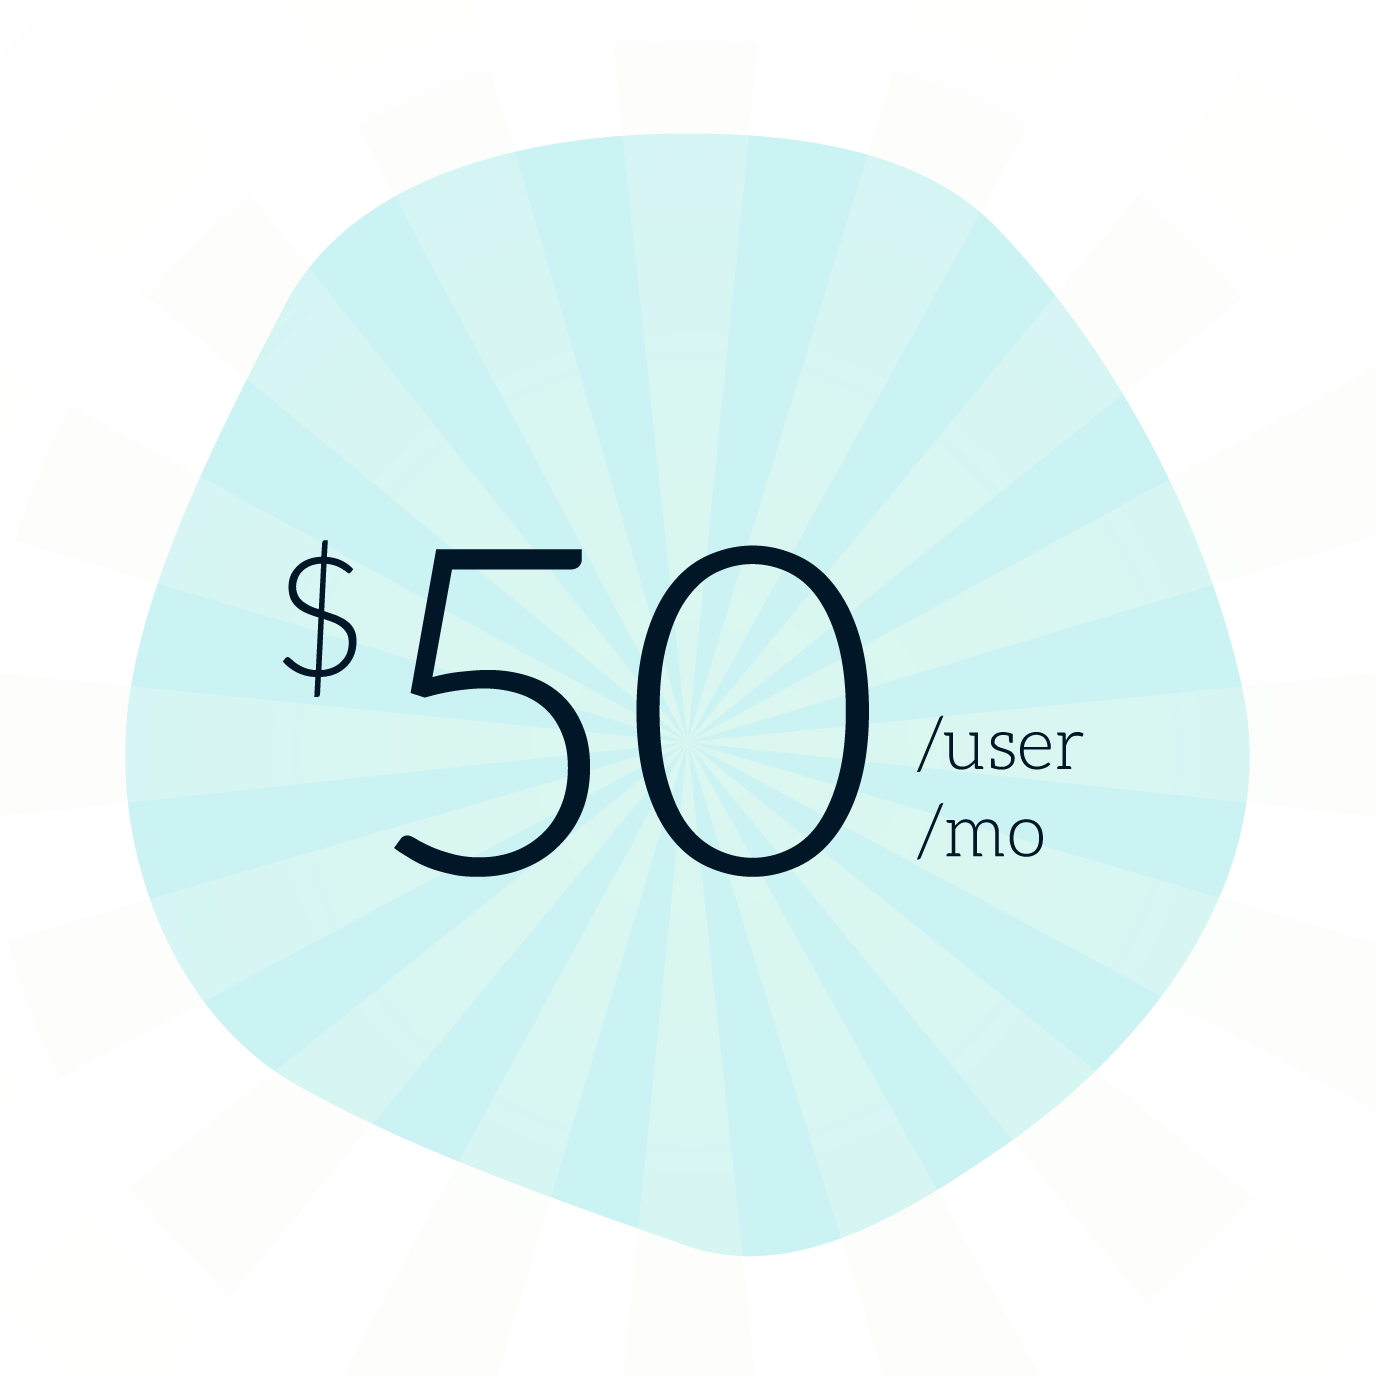 SoloFire is $50 per user, per month